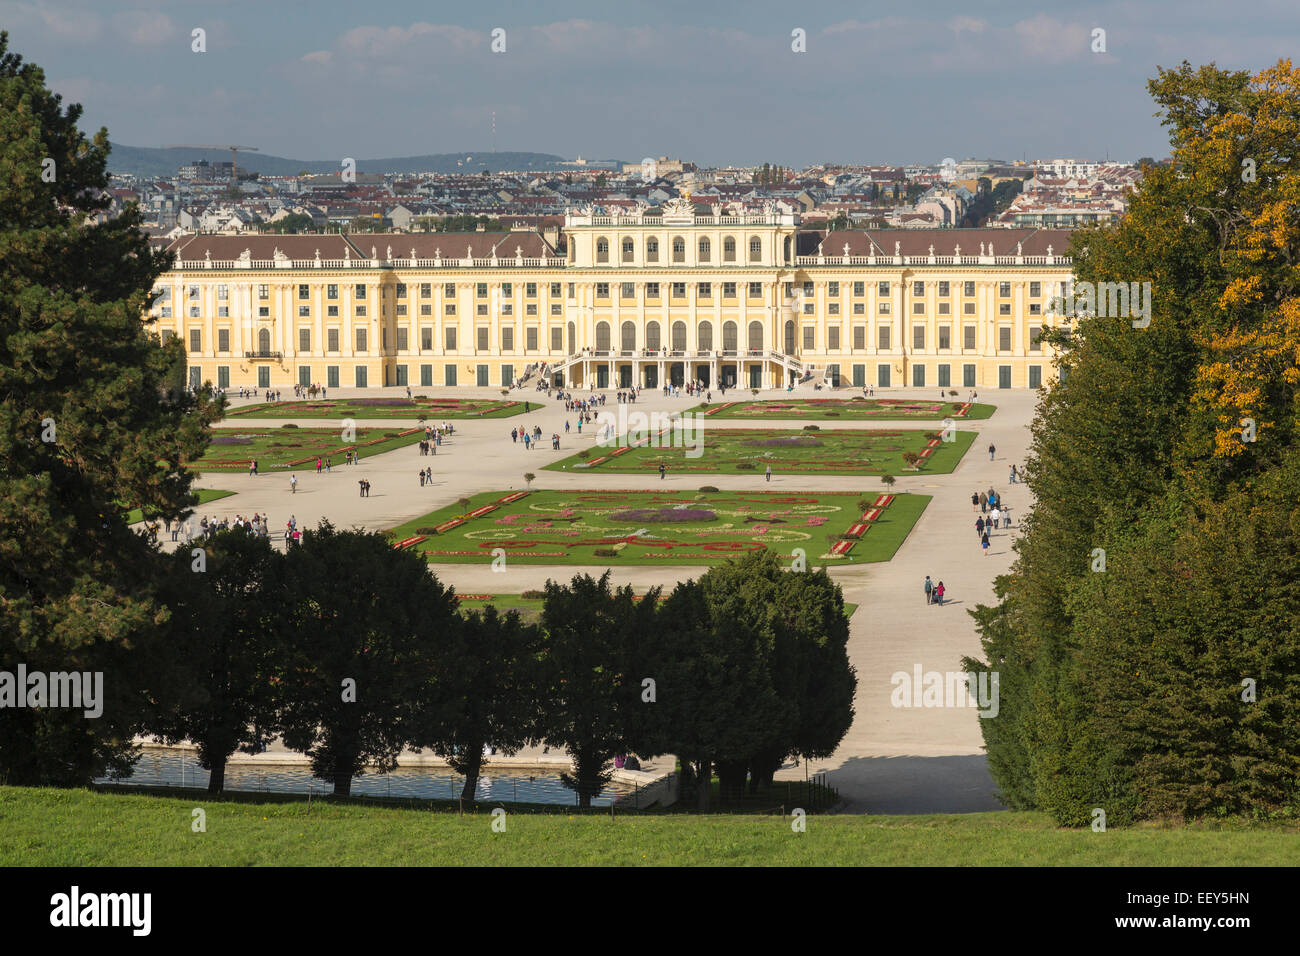 Vista aérea desde la ladera del exterior del Palacio de Schonbrunn en Viena, Austria. Foto de stock